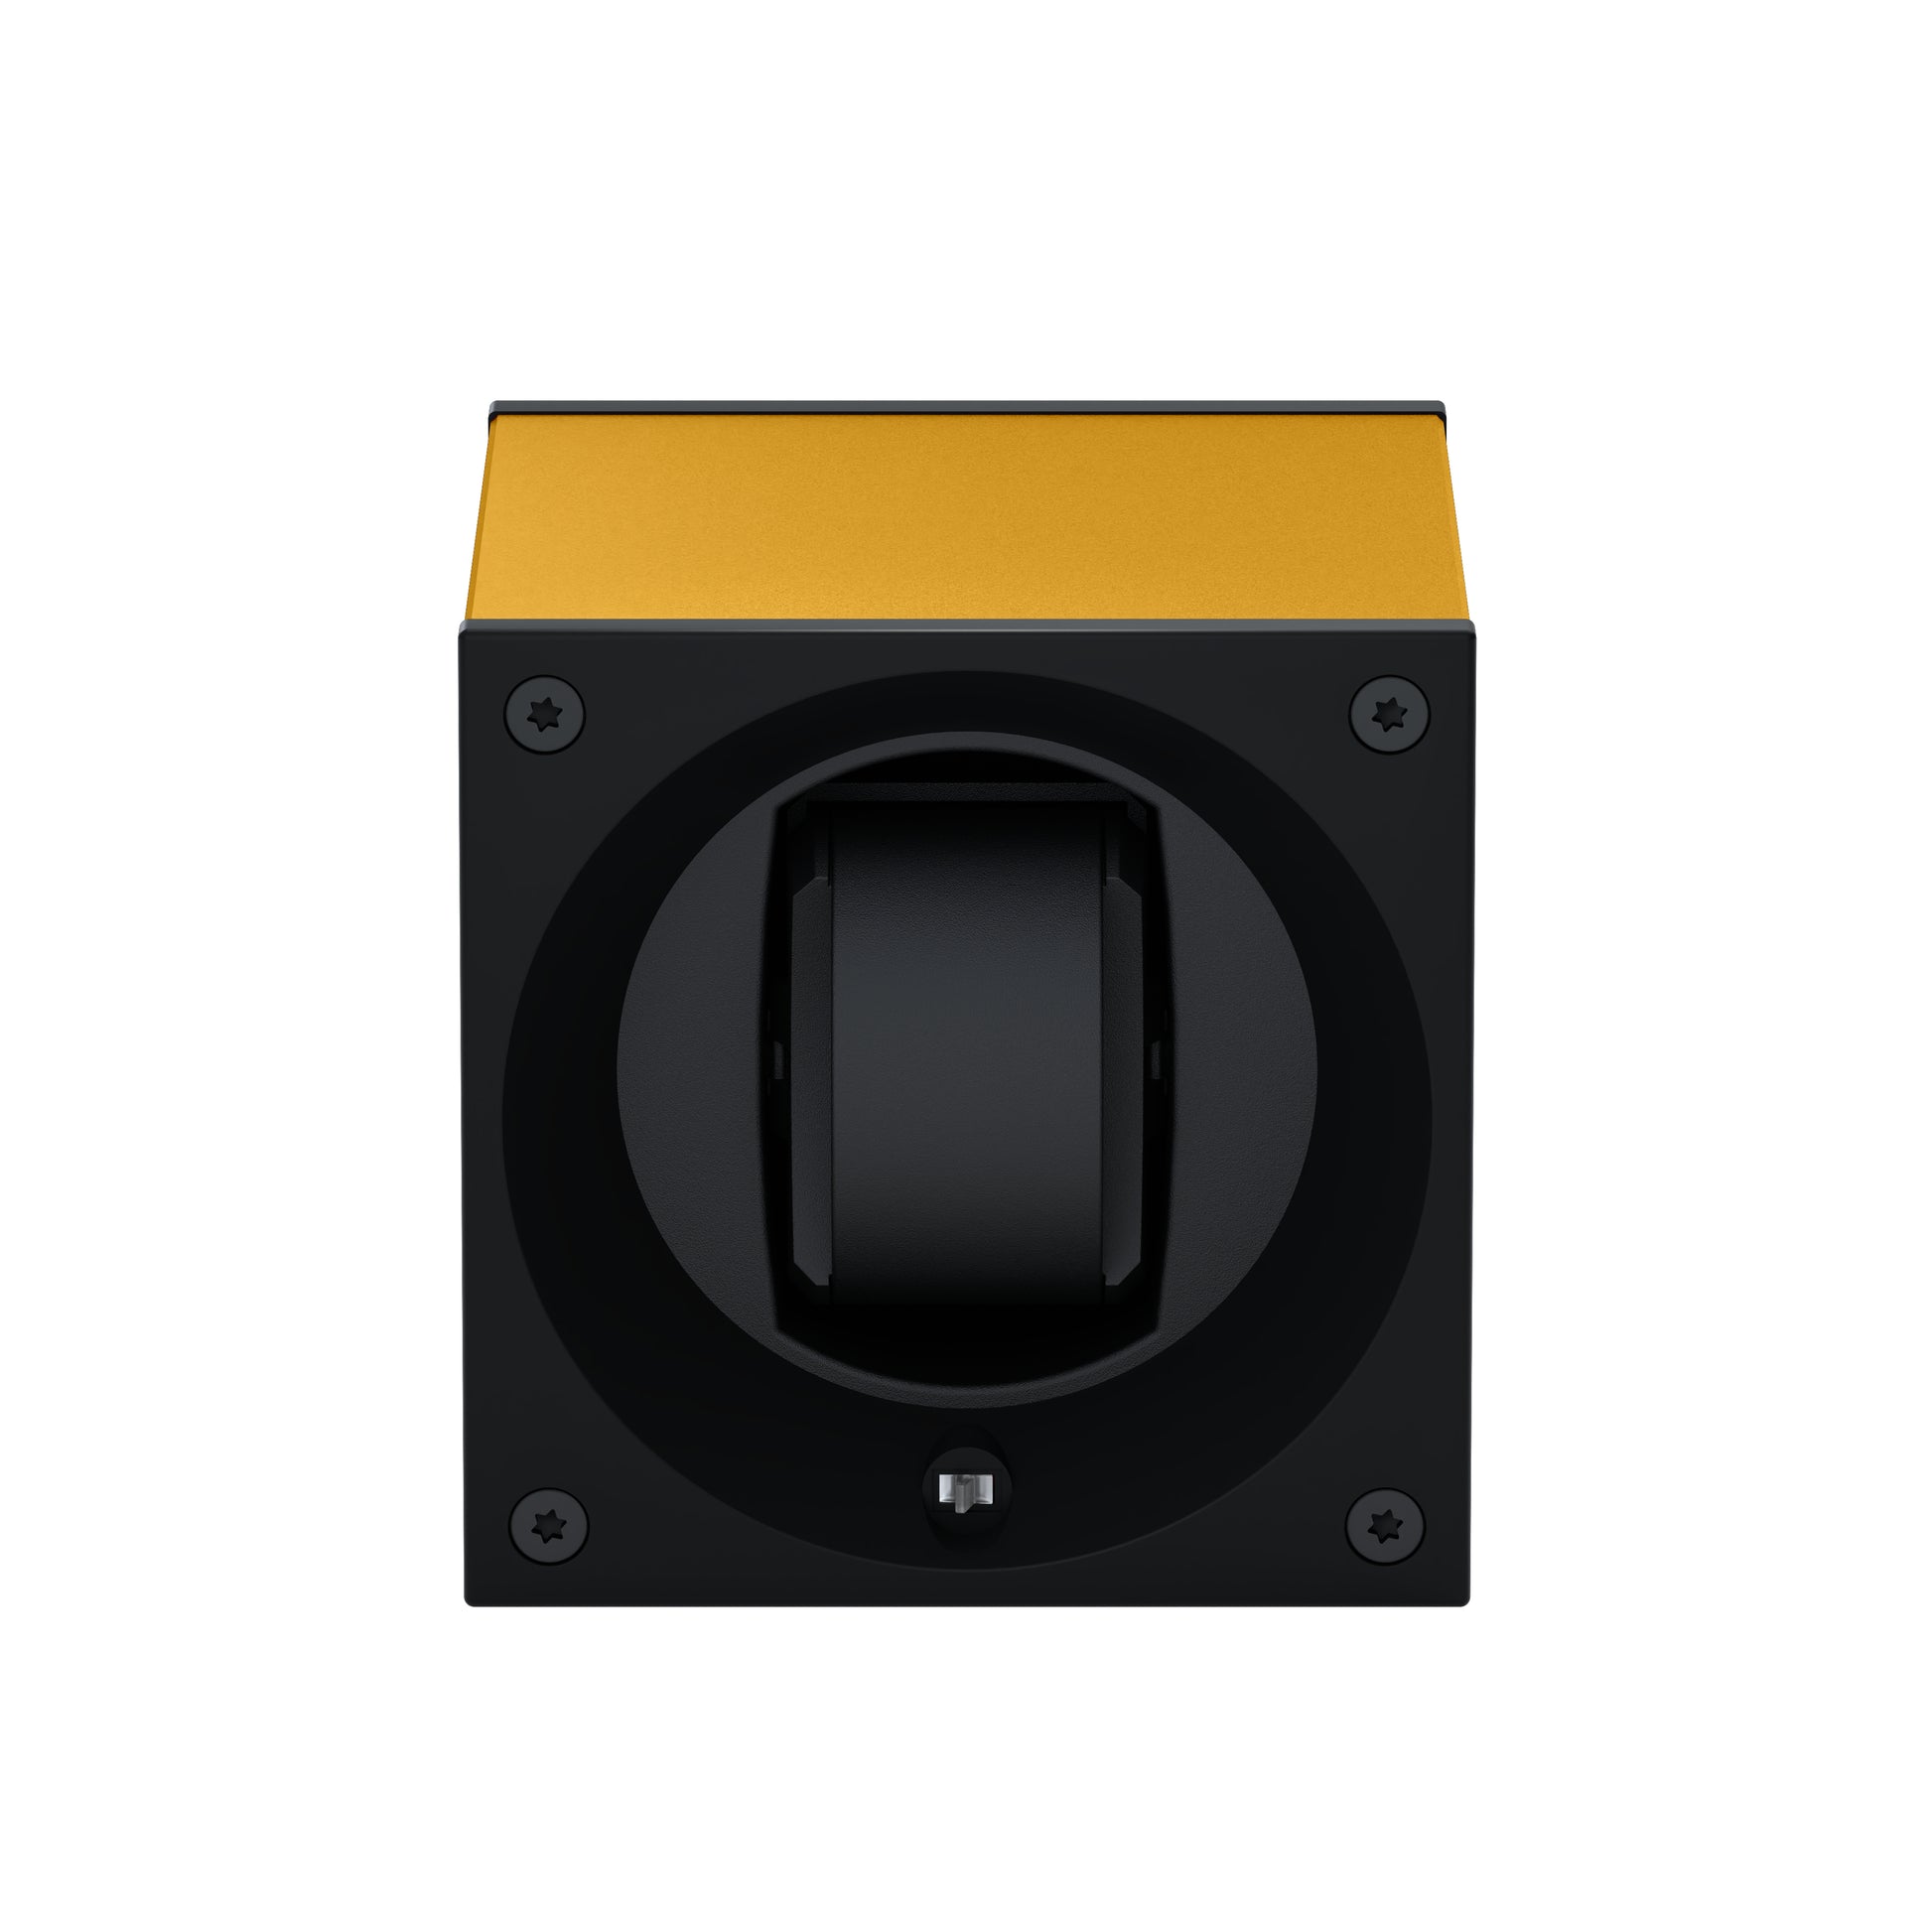 Masterbox 1 montre Aluminium Or : écrin rotatif pour montre automatique